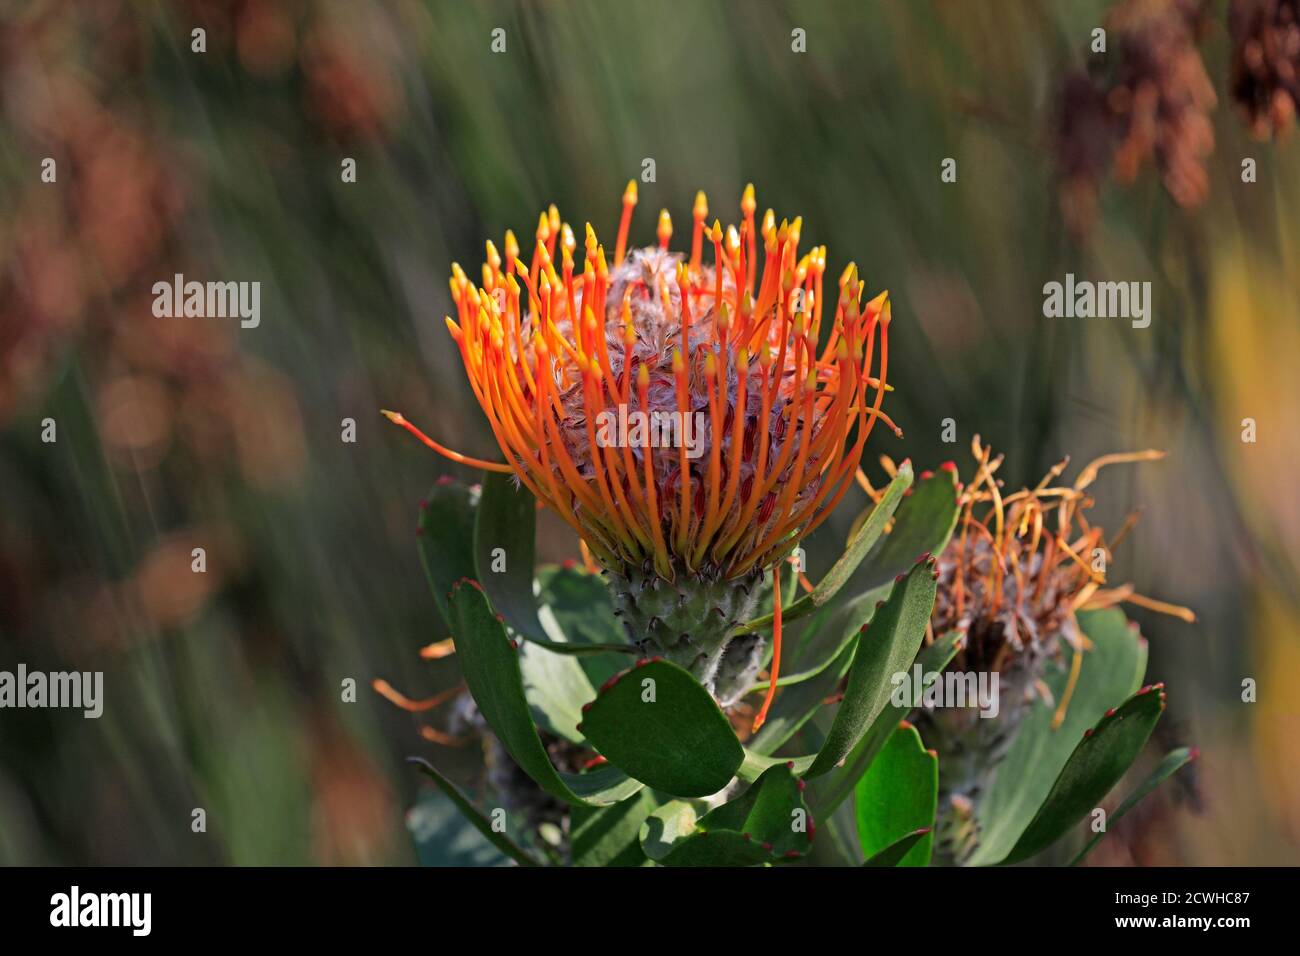 Rooivlam speldekussing, Pinsobest Protea (Leucospermum praecox) dans les jardins botaniques nationaux de Kirstenbosch, le Cap, Afrique du Sud. Banque D'Images